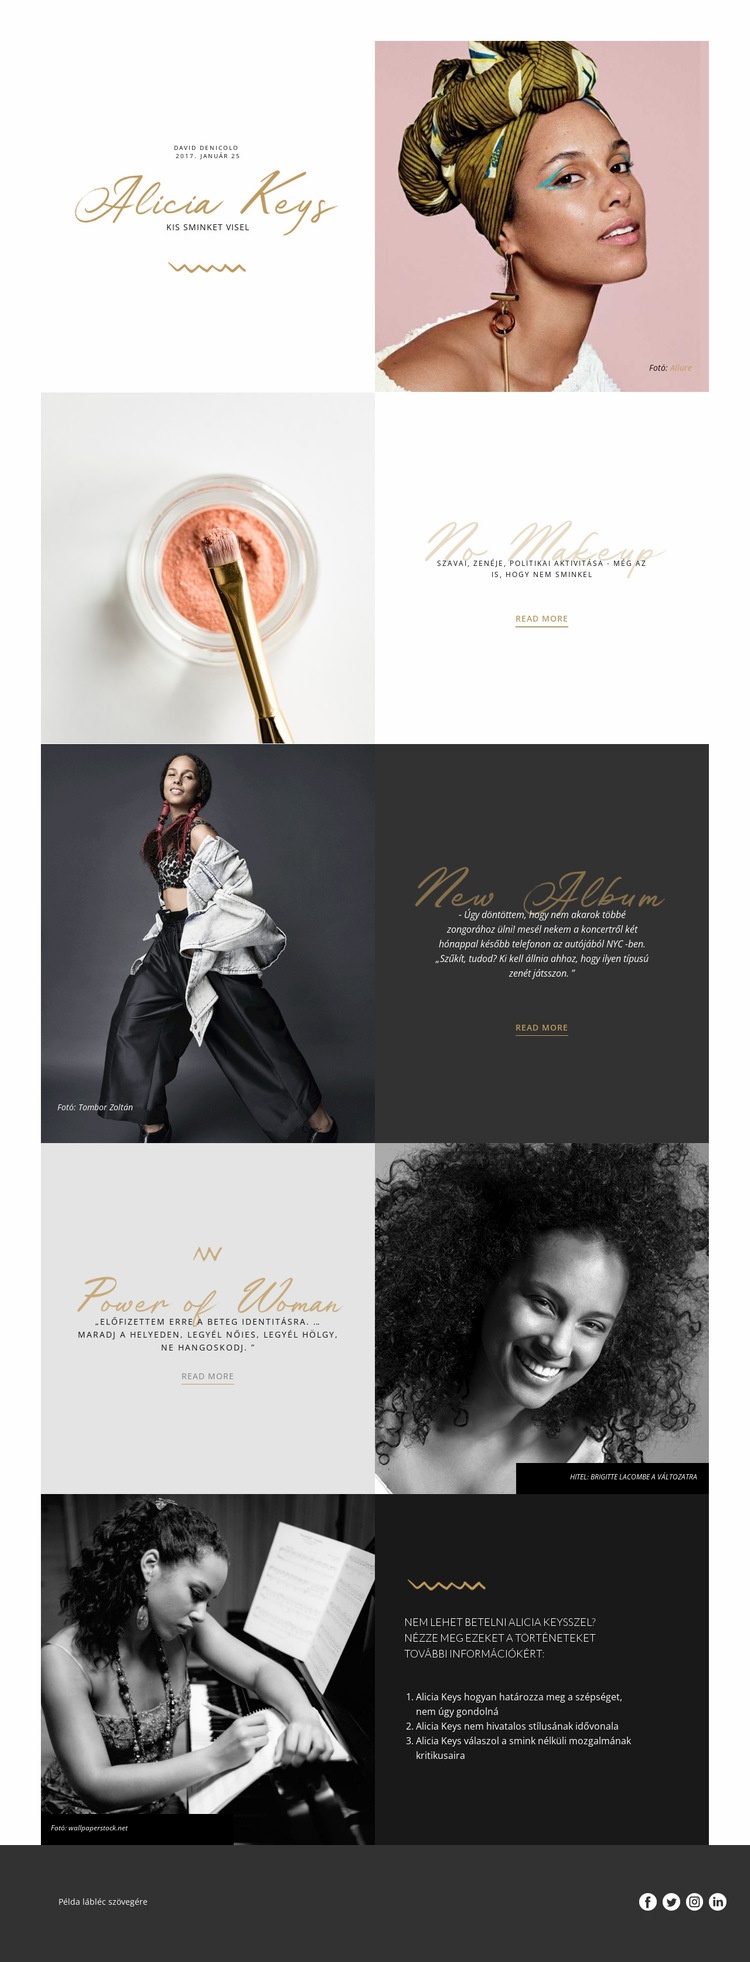 Alicia Keys Weboldal tervezés